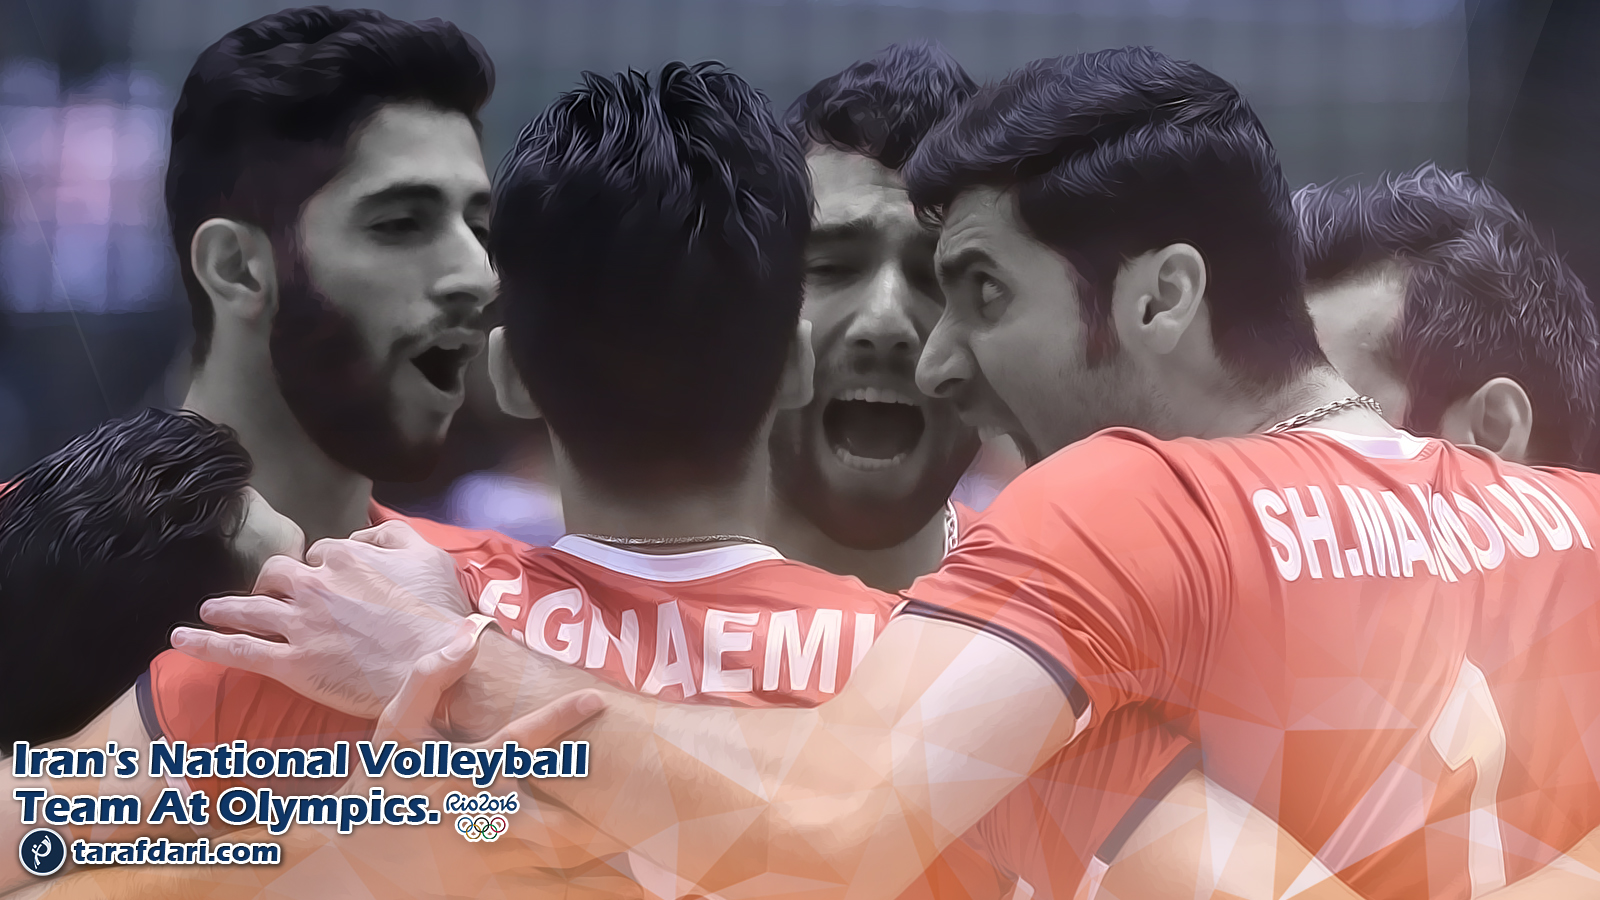 پوستر اختصاصی طرفداری؛ بمناسبت المپیکی شدن تیم ملی والیبال ایران